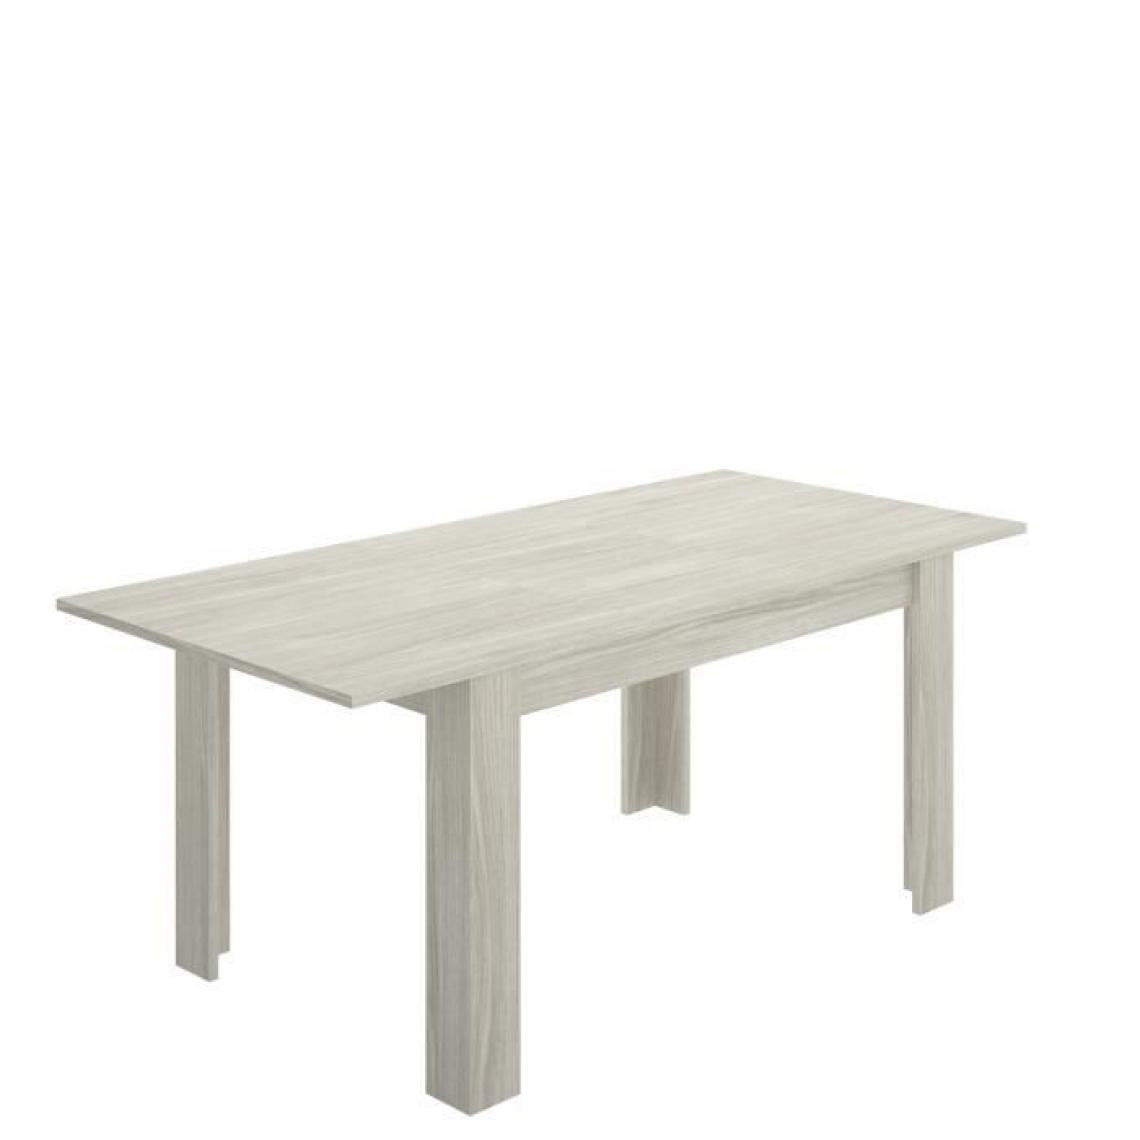 Cstore - CSTORE - table à manger extensible 6-8 personnes - décor chêne grisé - l 140 / 190xp 90xh 77 cm - dine - Tables à manger